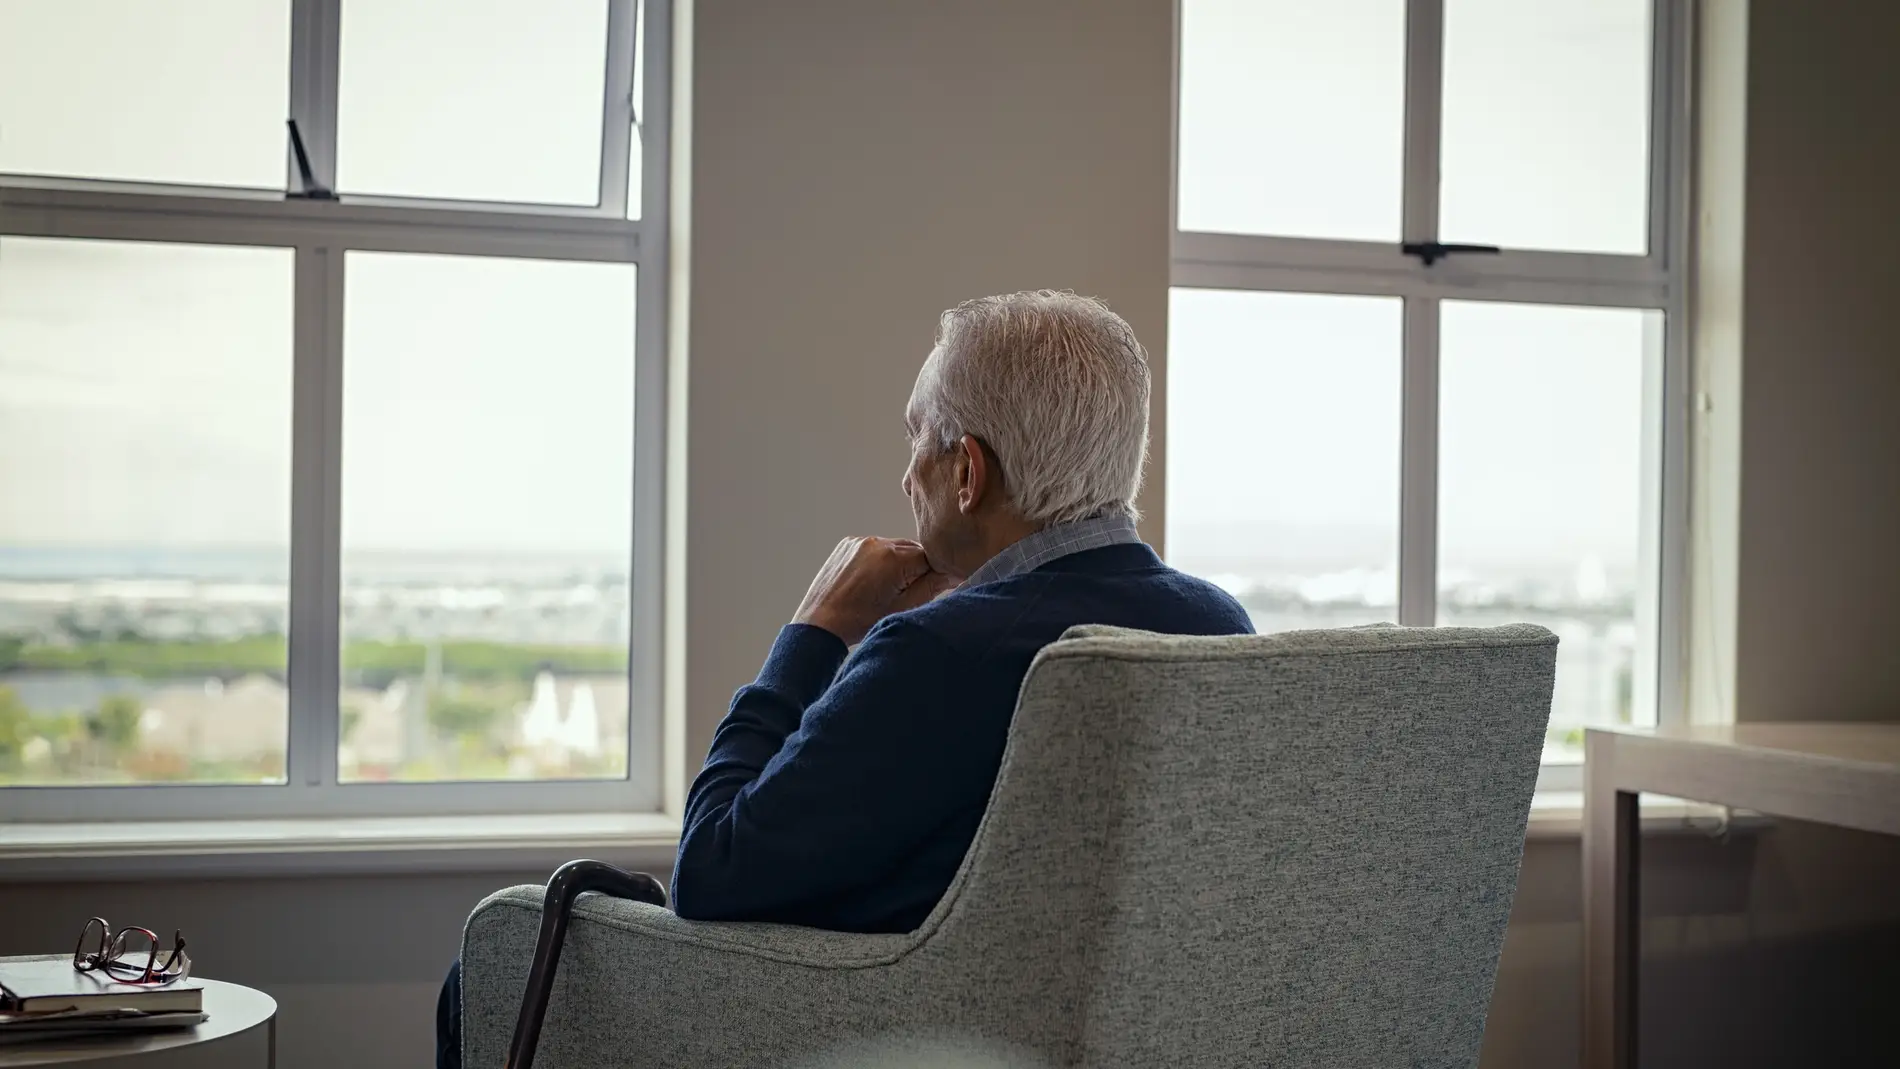 La soledad afecta a muchos de nuestros mayores